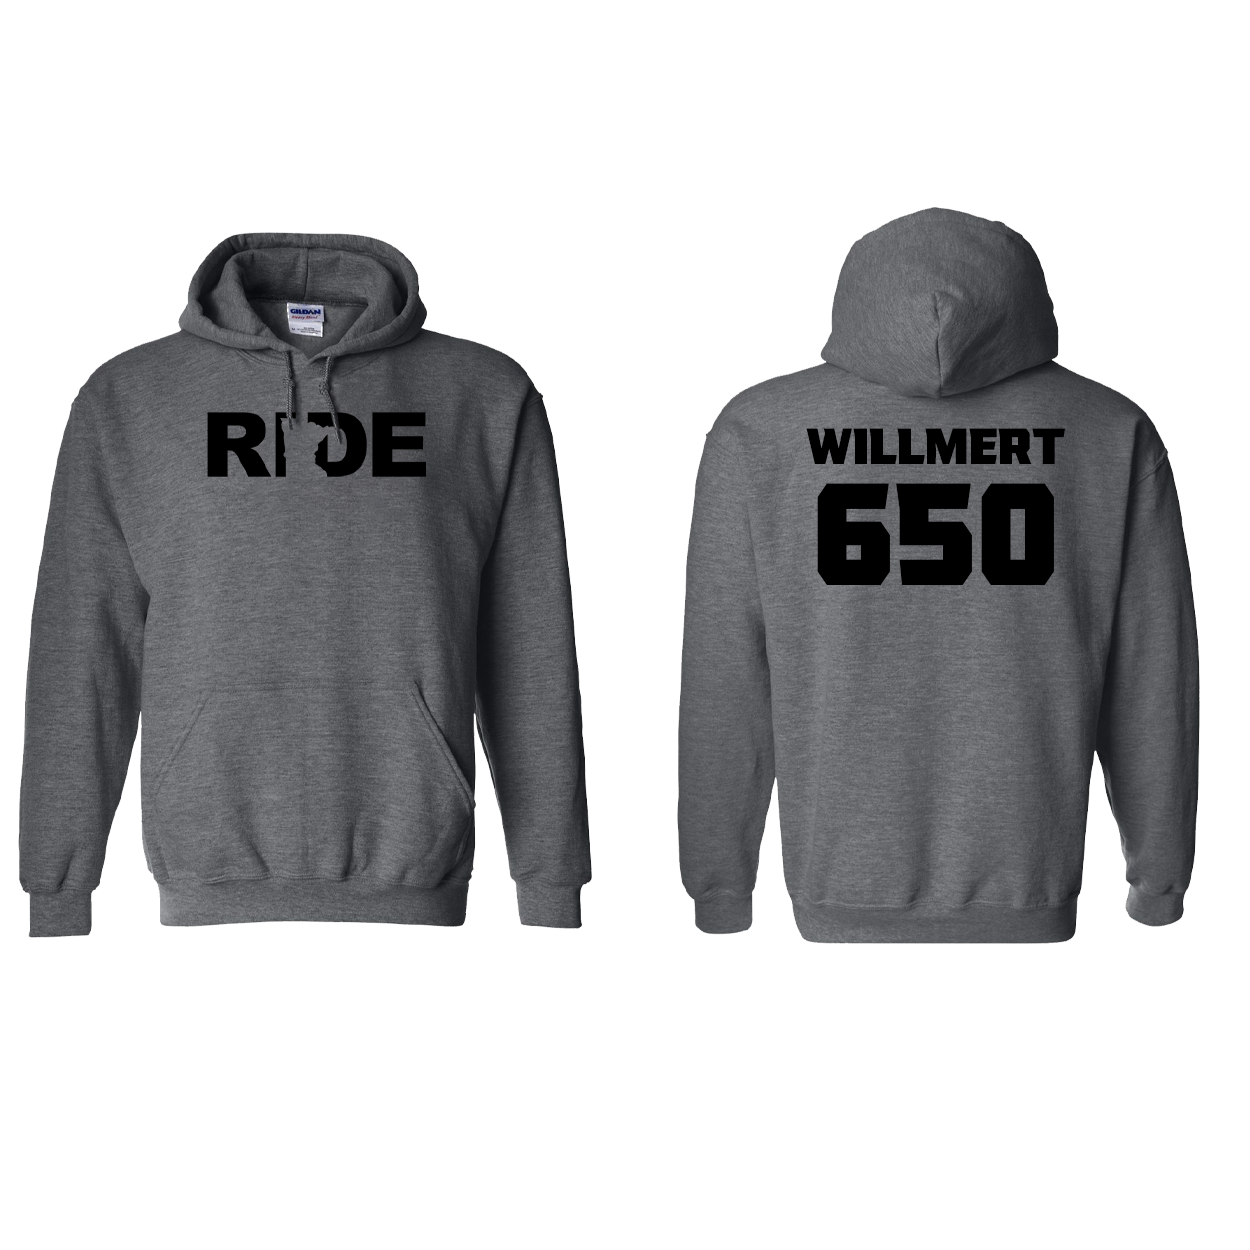 FXR BMX Race Team Classic Athlete Support Sweatshirt J. WILLMERT #650 Dark Heather (Black Logo)